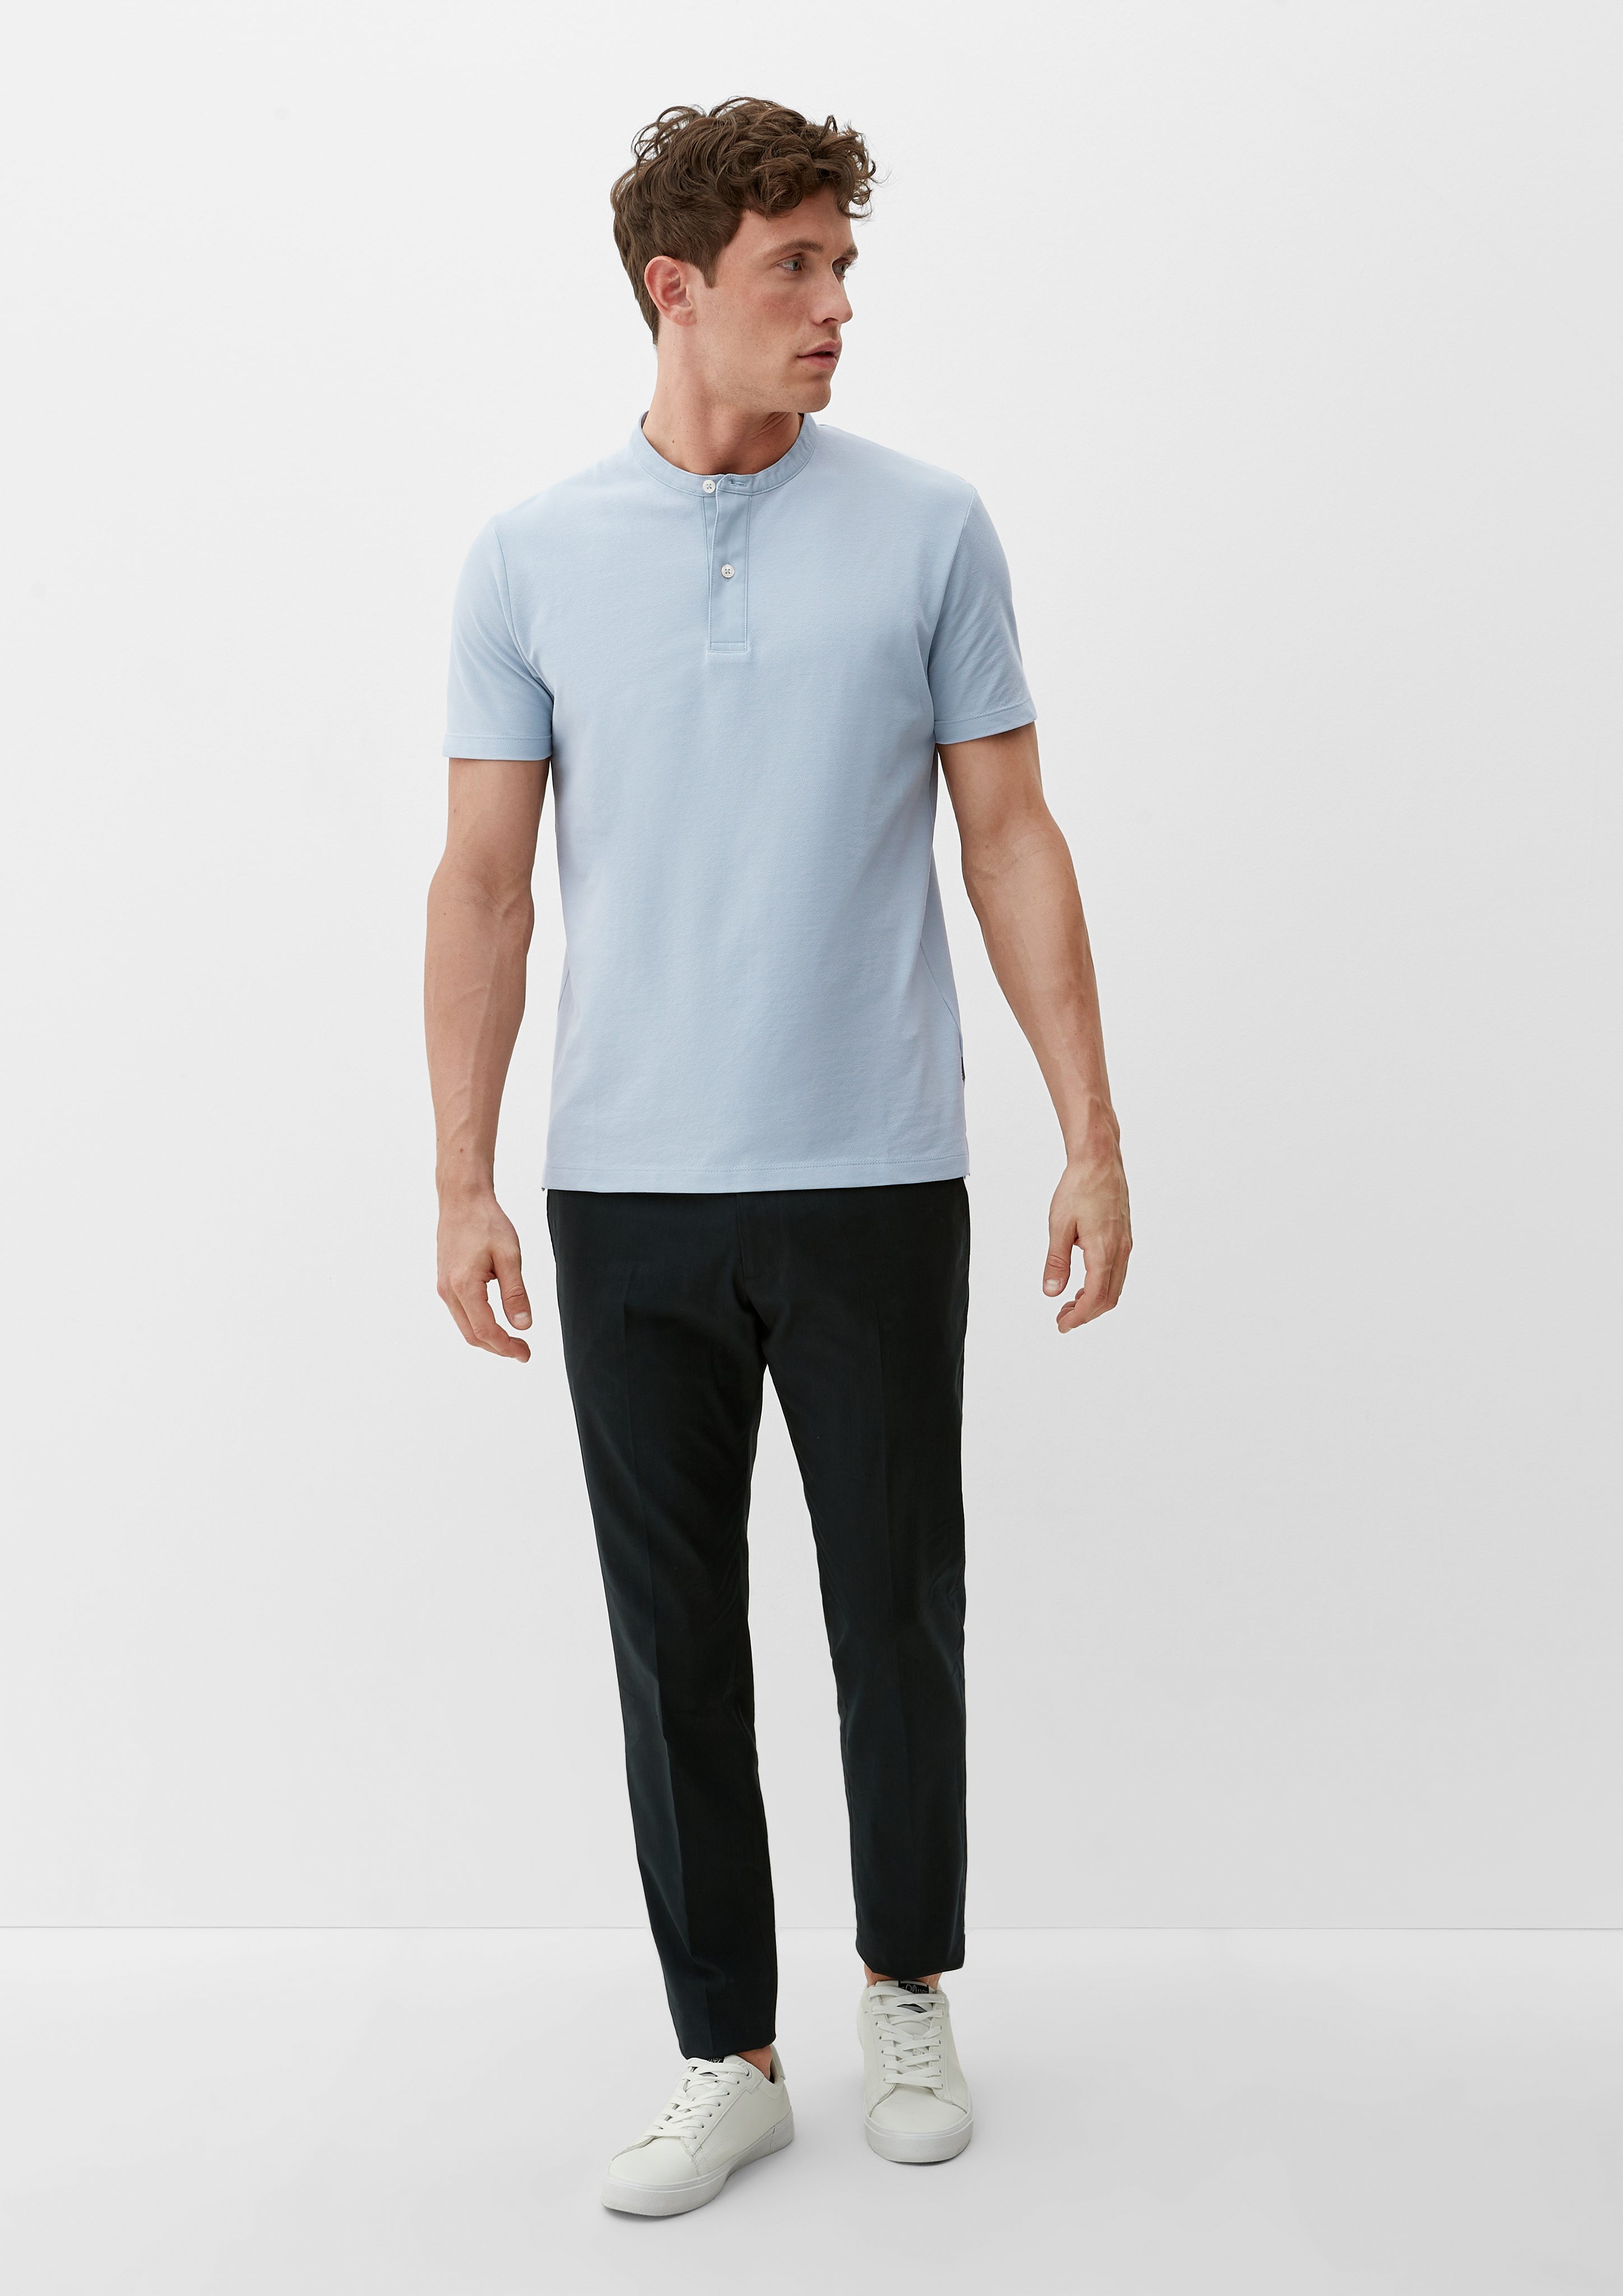 Kurzarmshirt mit Henleyausschnitt hellblau T-Shirt s.Oliver